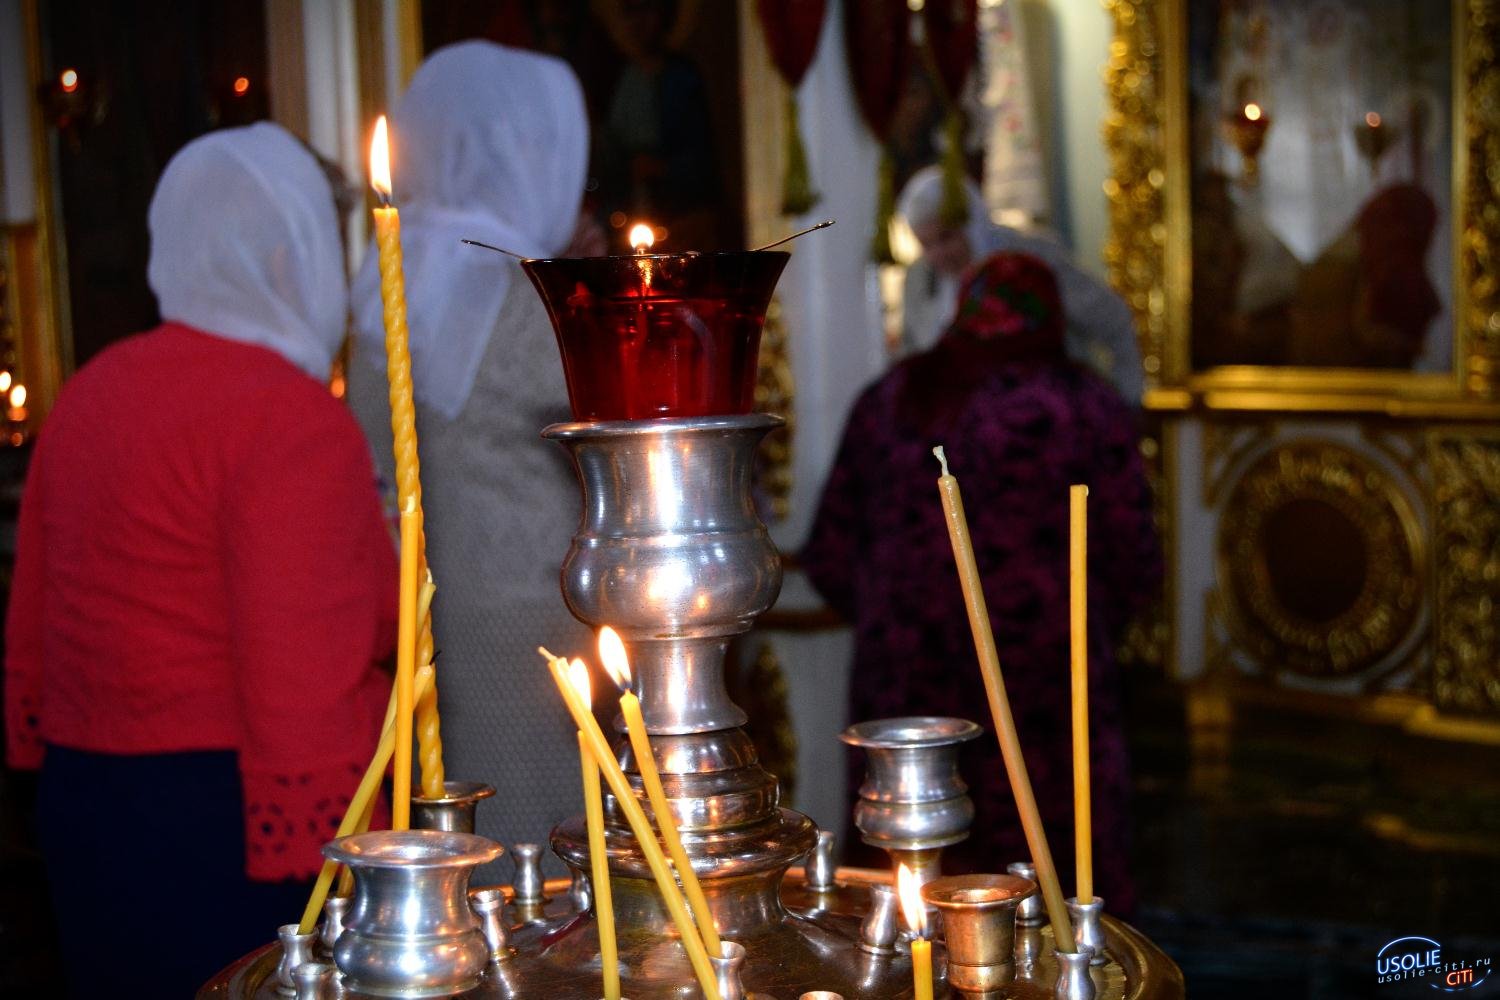 Сегодня нельзя плохо о ком-то думать: В Усольском районе православные верующие встречают Вознесение Господне